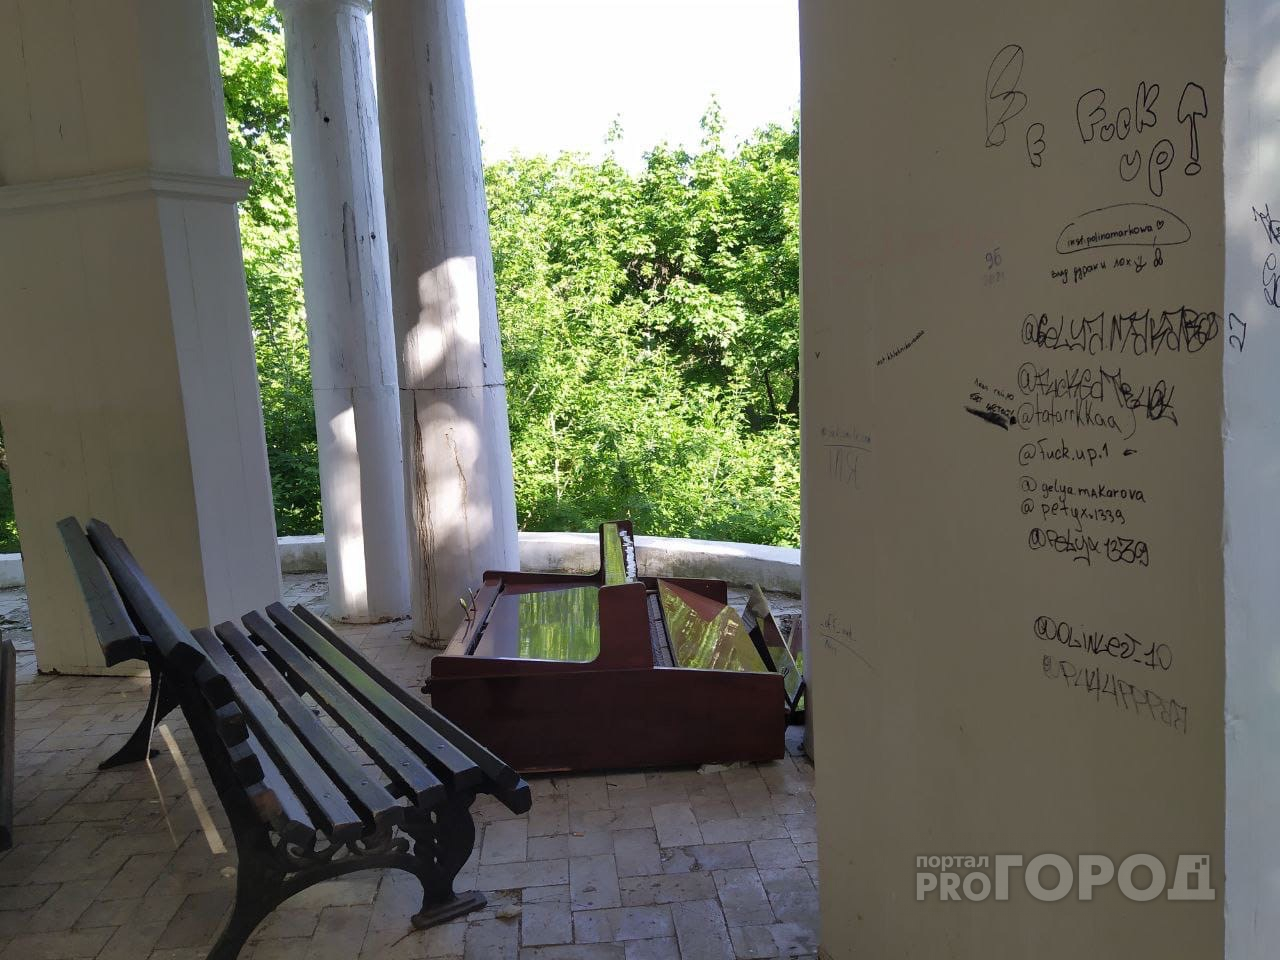 В Александровском саду неизвестные опрокинули пианино и выломали часть ограждения